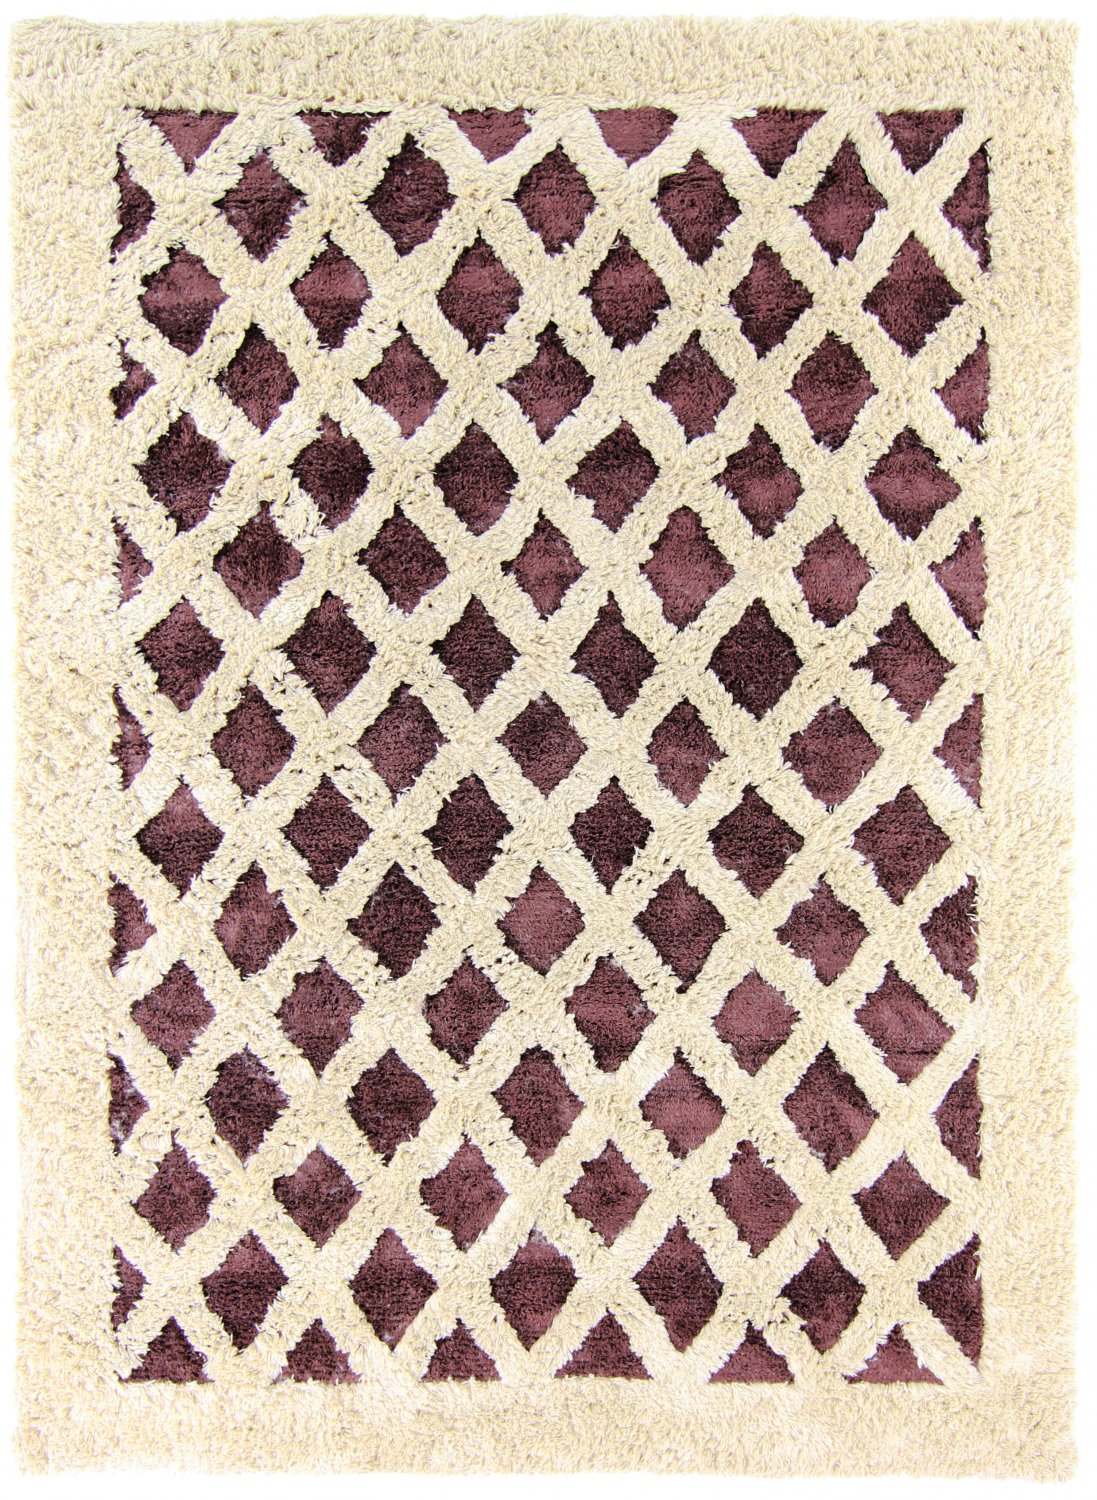 Wool rug - Kara (brown/offwhite)